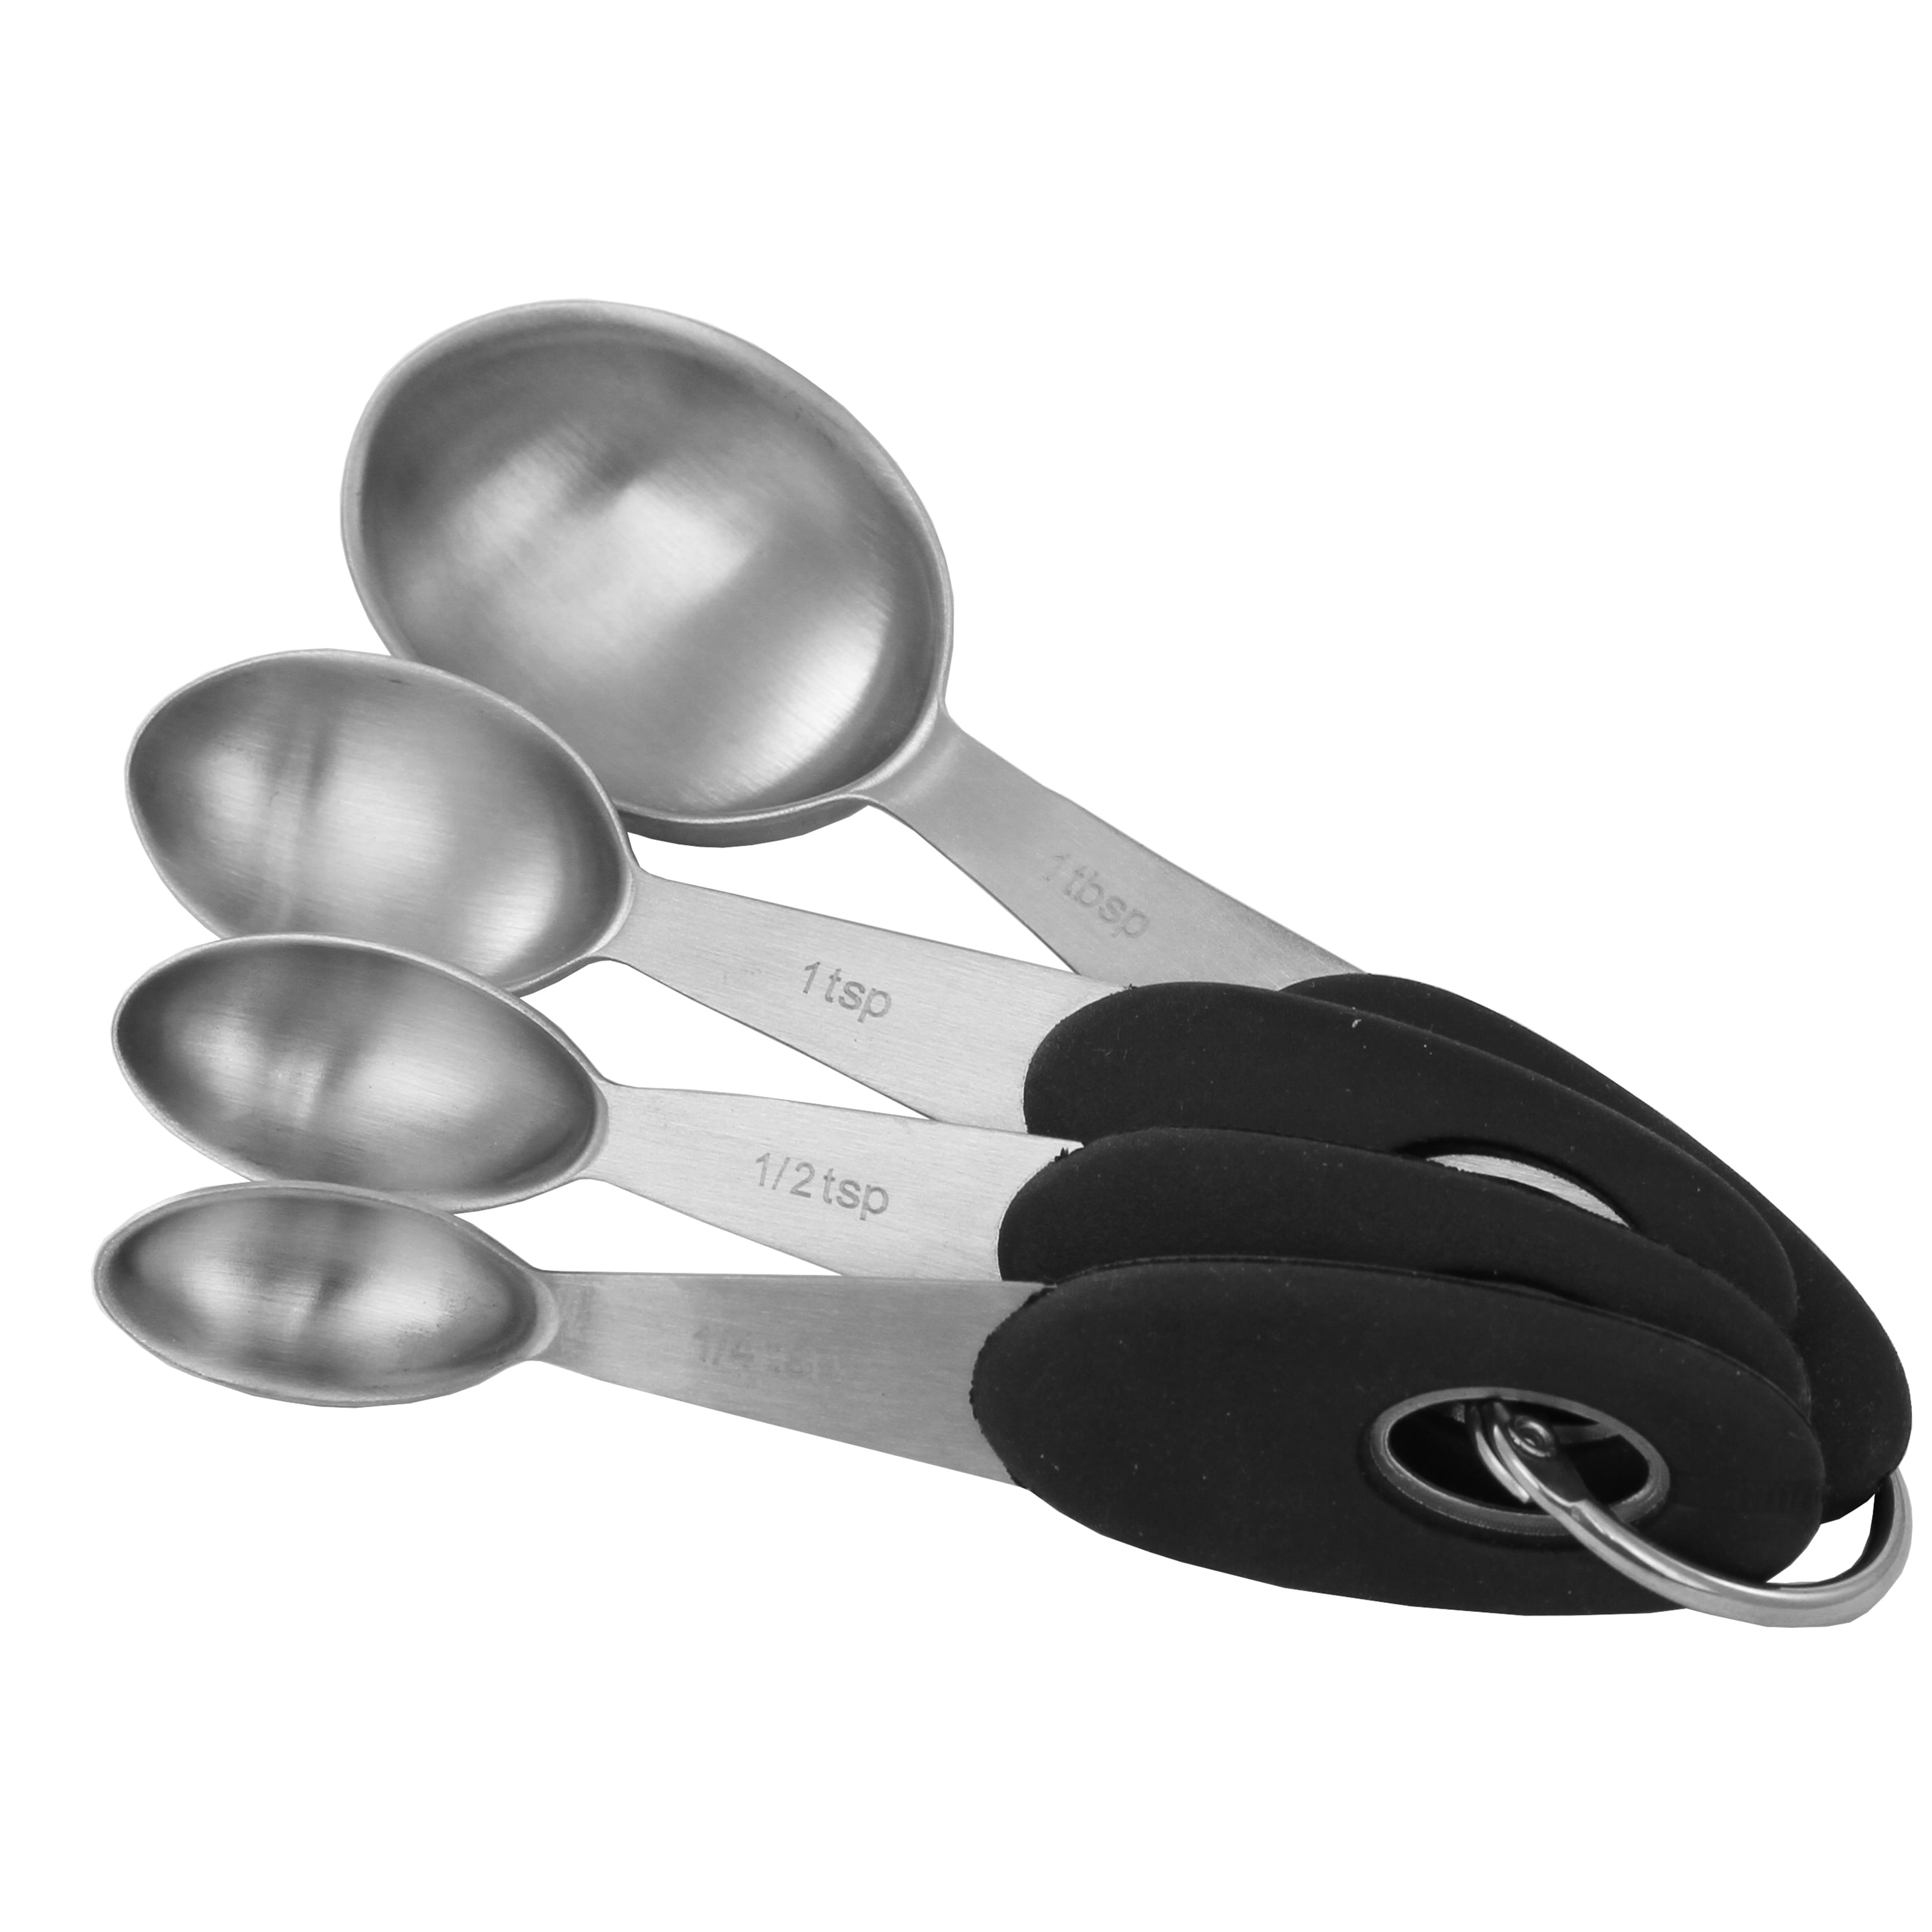 Measuring Spoons: NOGIS 18/8 Stainless Steel Measuring Spoons Set of 9  Piece: 1/16 tsp, 1/8 tsp, 1/4 tsp, 1/3 tsp, 1/2 tsp, 3/4 tsp, 1 tsp, 1/2  tbsp 